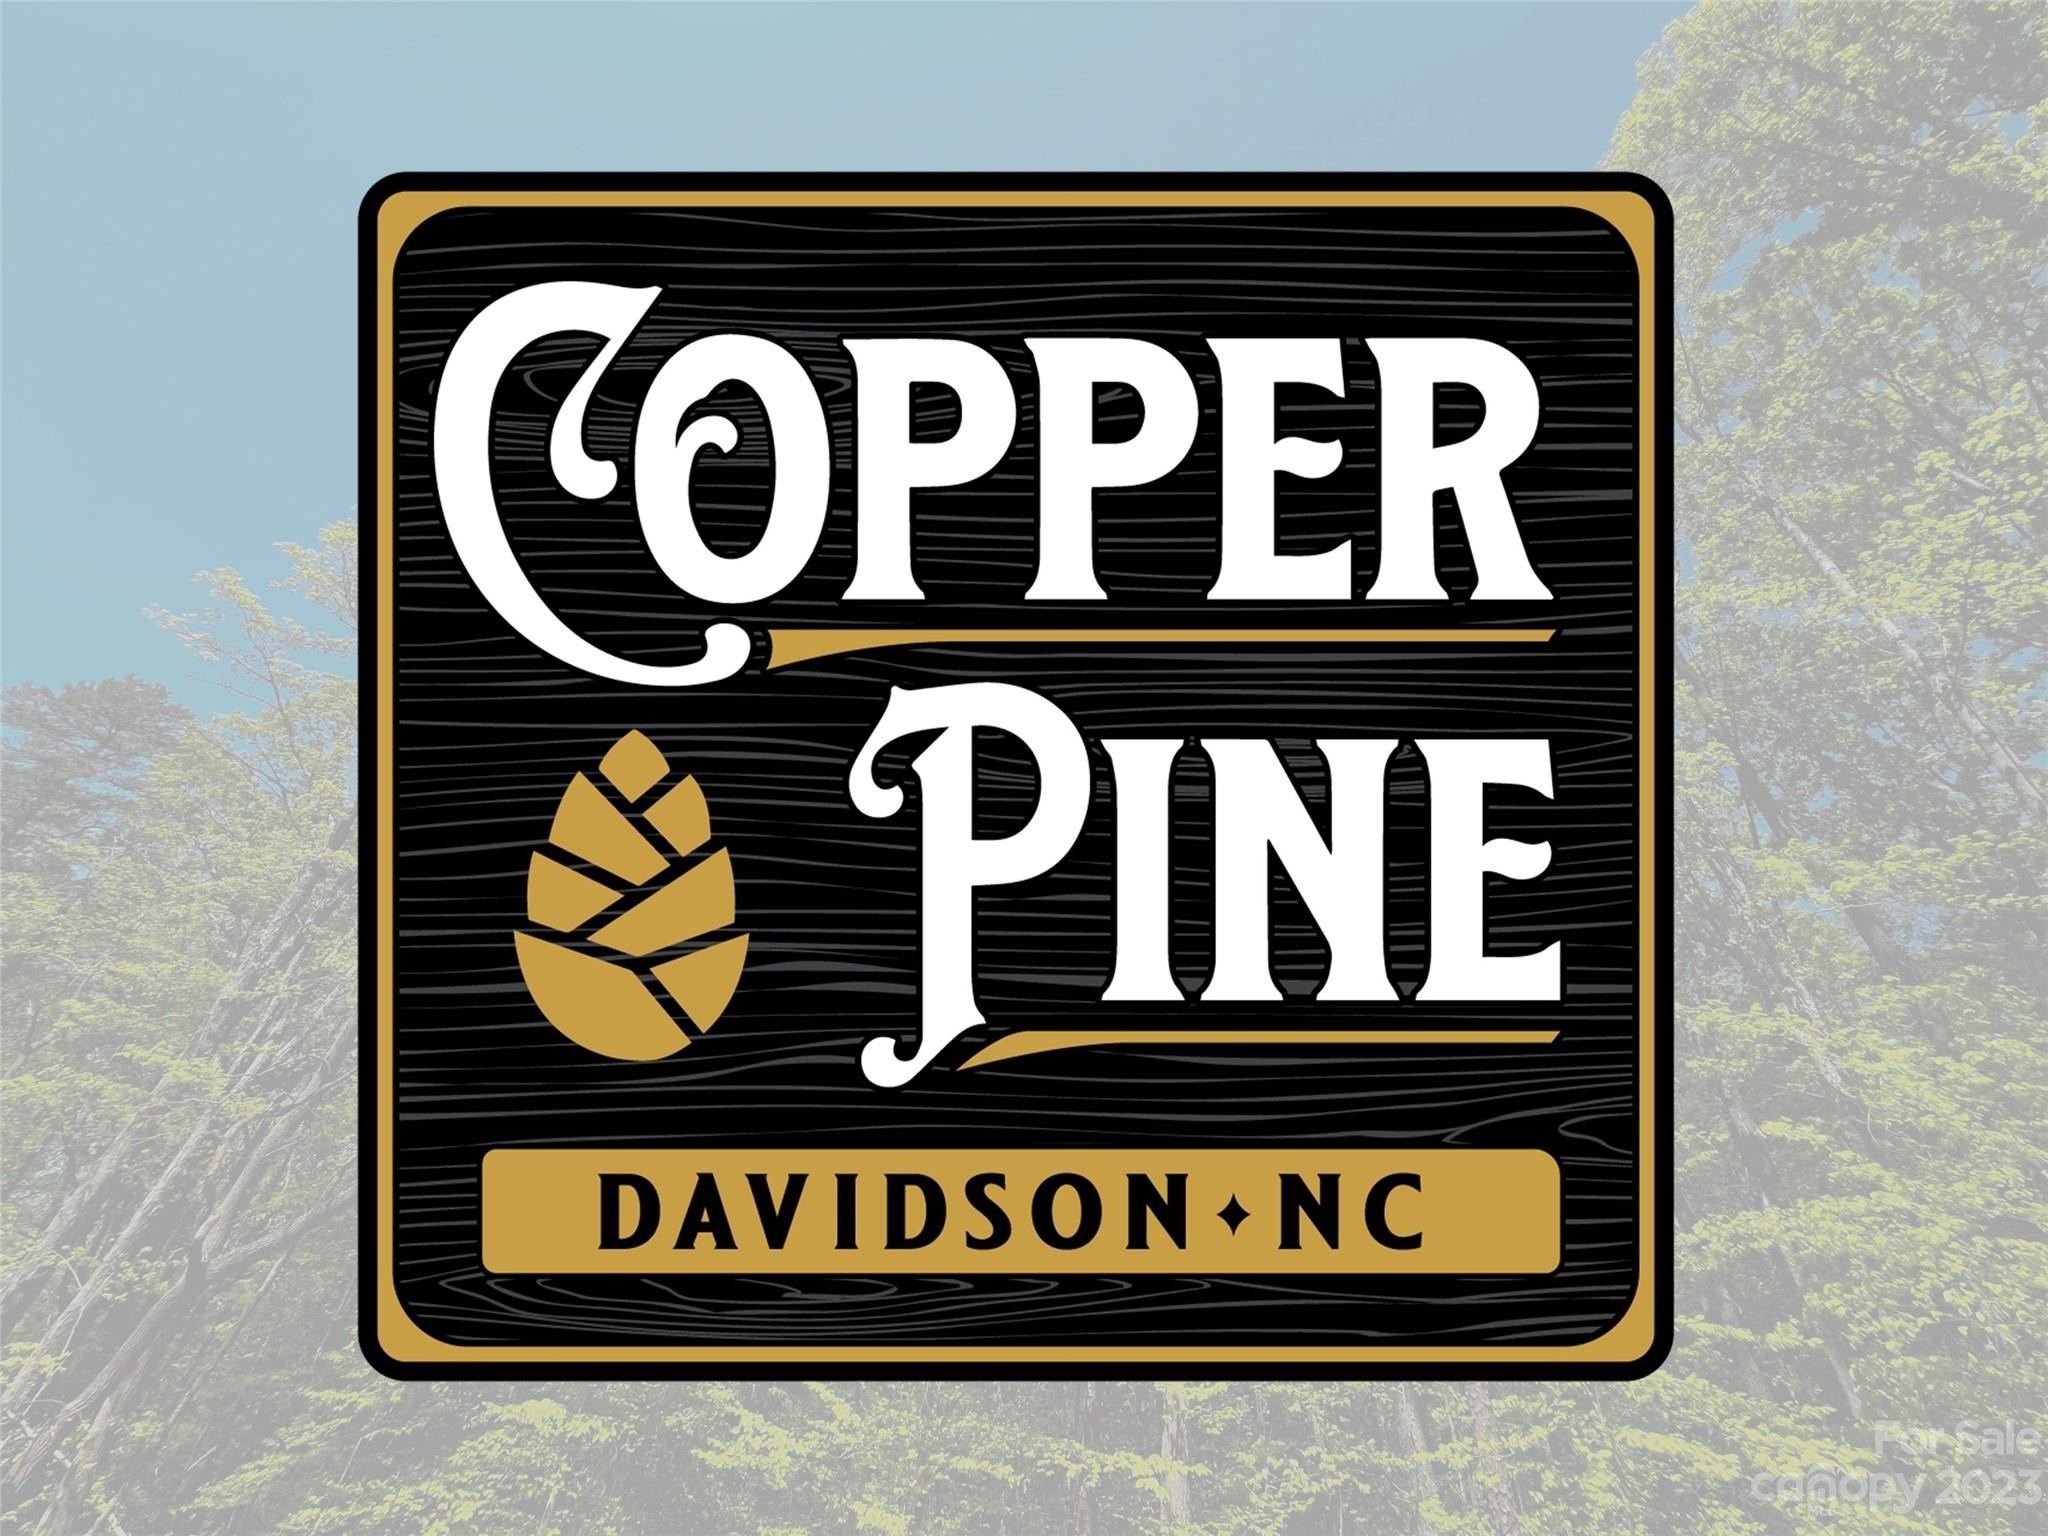 8. 146 Copper Pine Lane